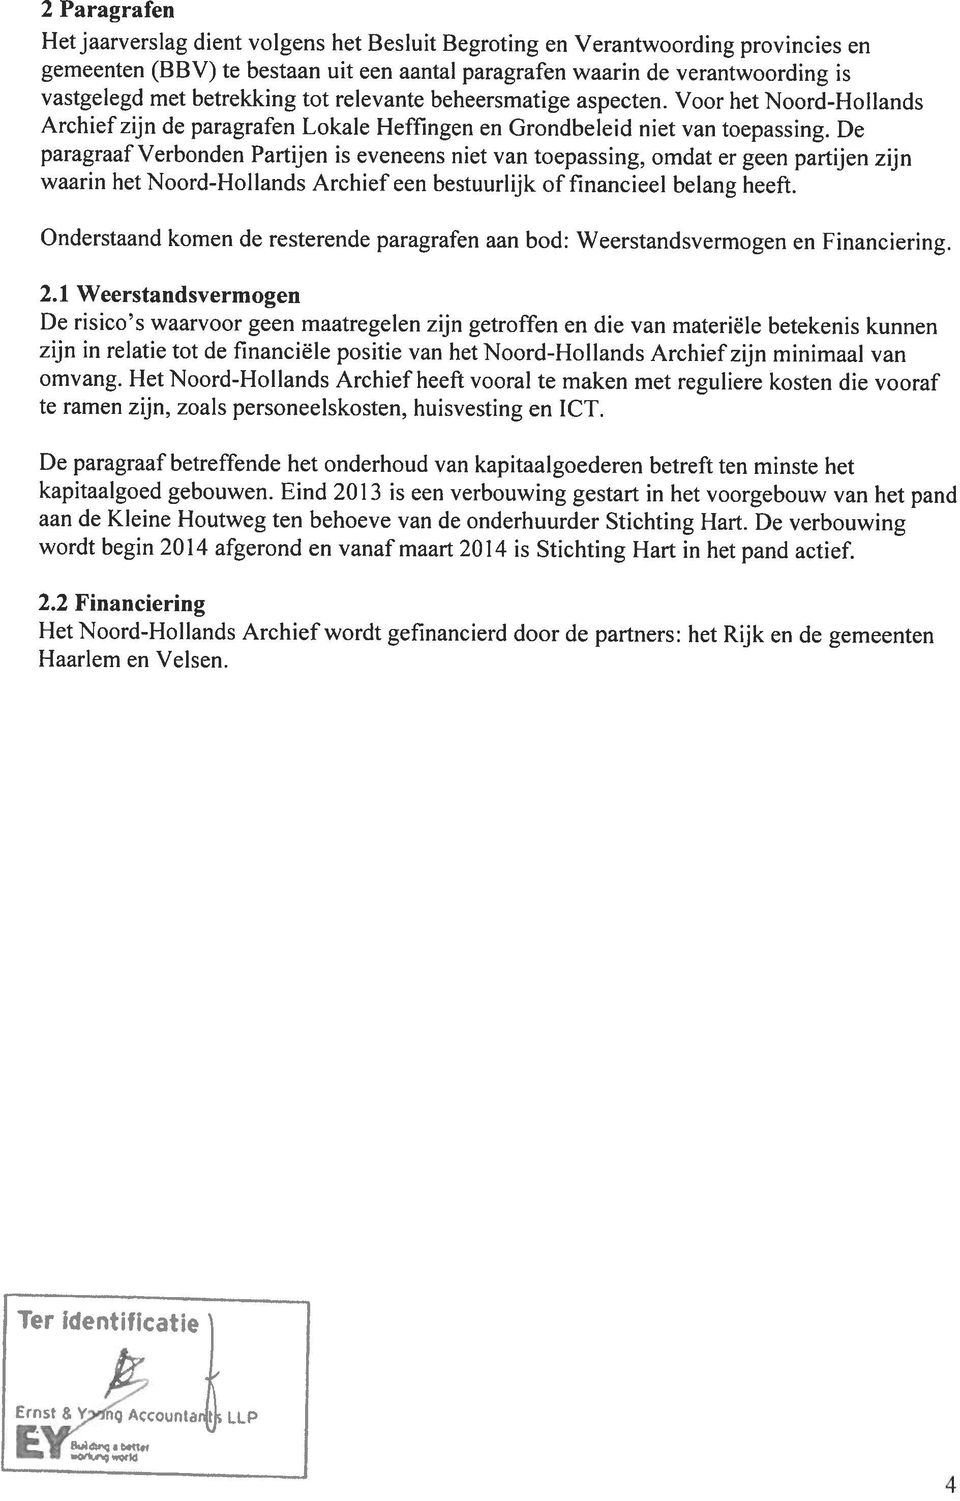 De paragraaf Verbonden Partijen is eveneens niet van toepassing, omdat er geen partijen zijn waarin het Noord-Hollands Archief een bestuurlijk of financieel belang heeft.